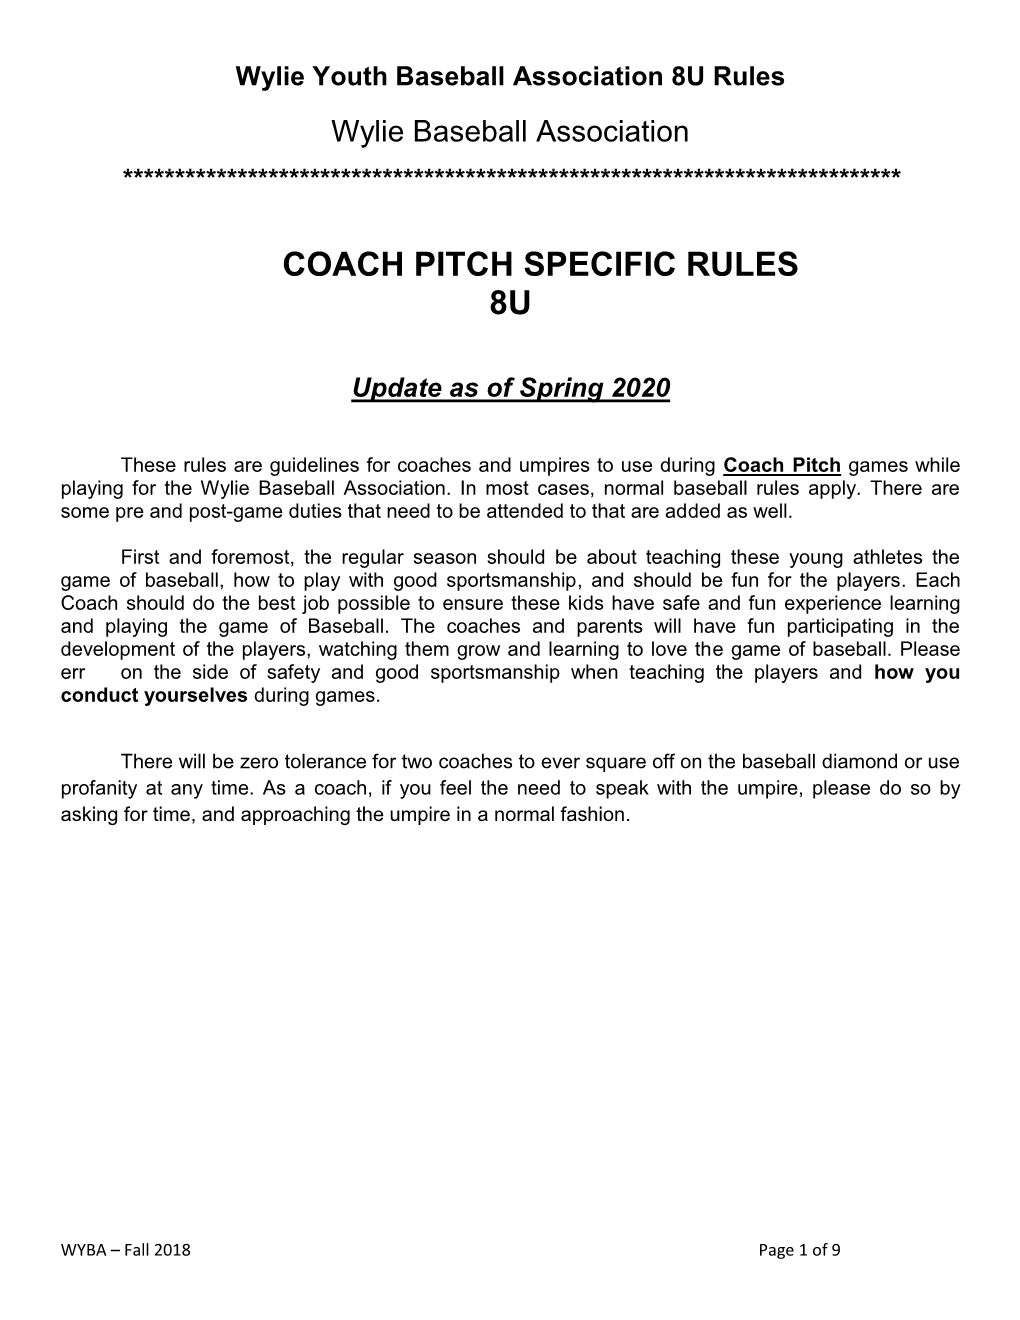 Coach Pitch Specific Rules 8U